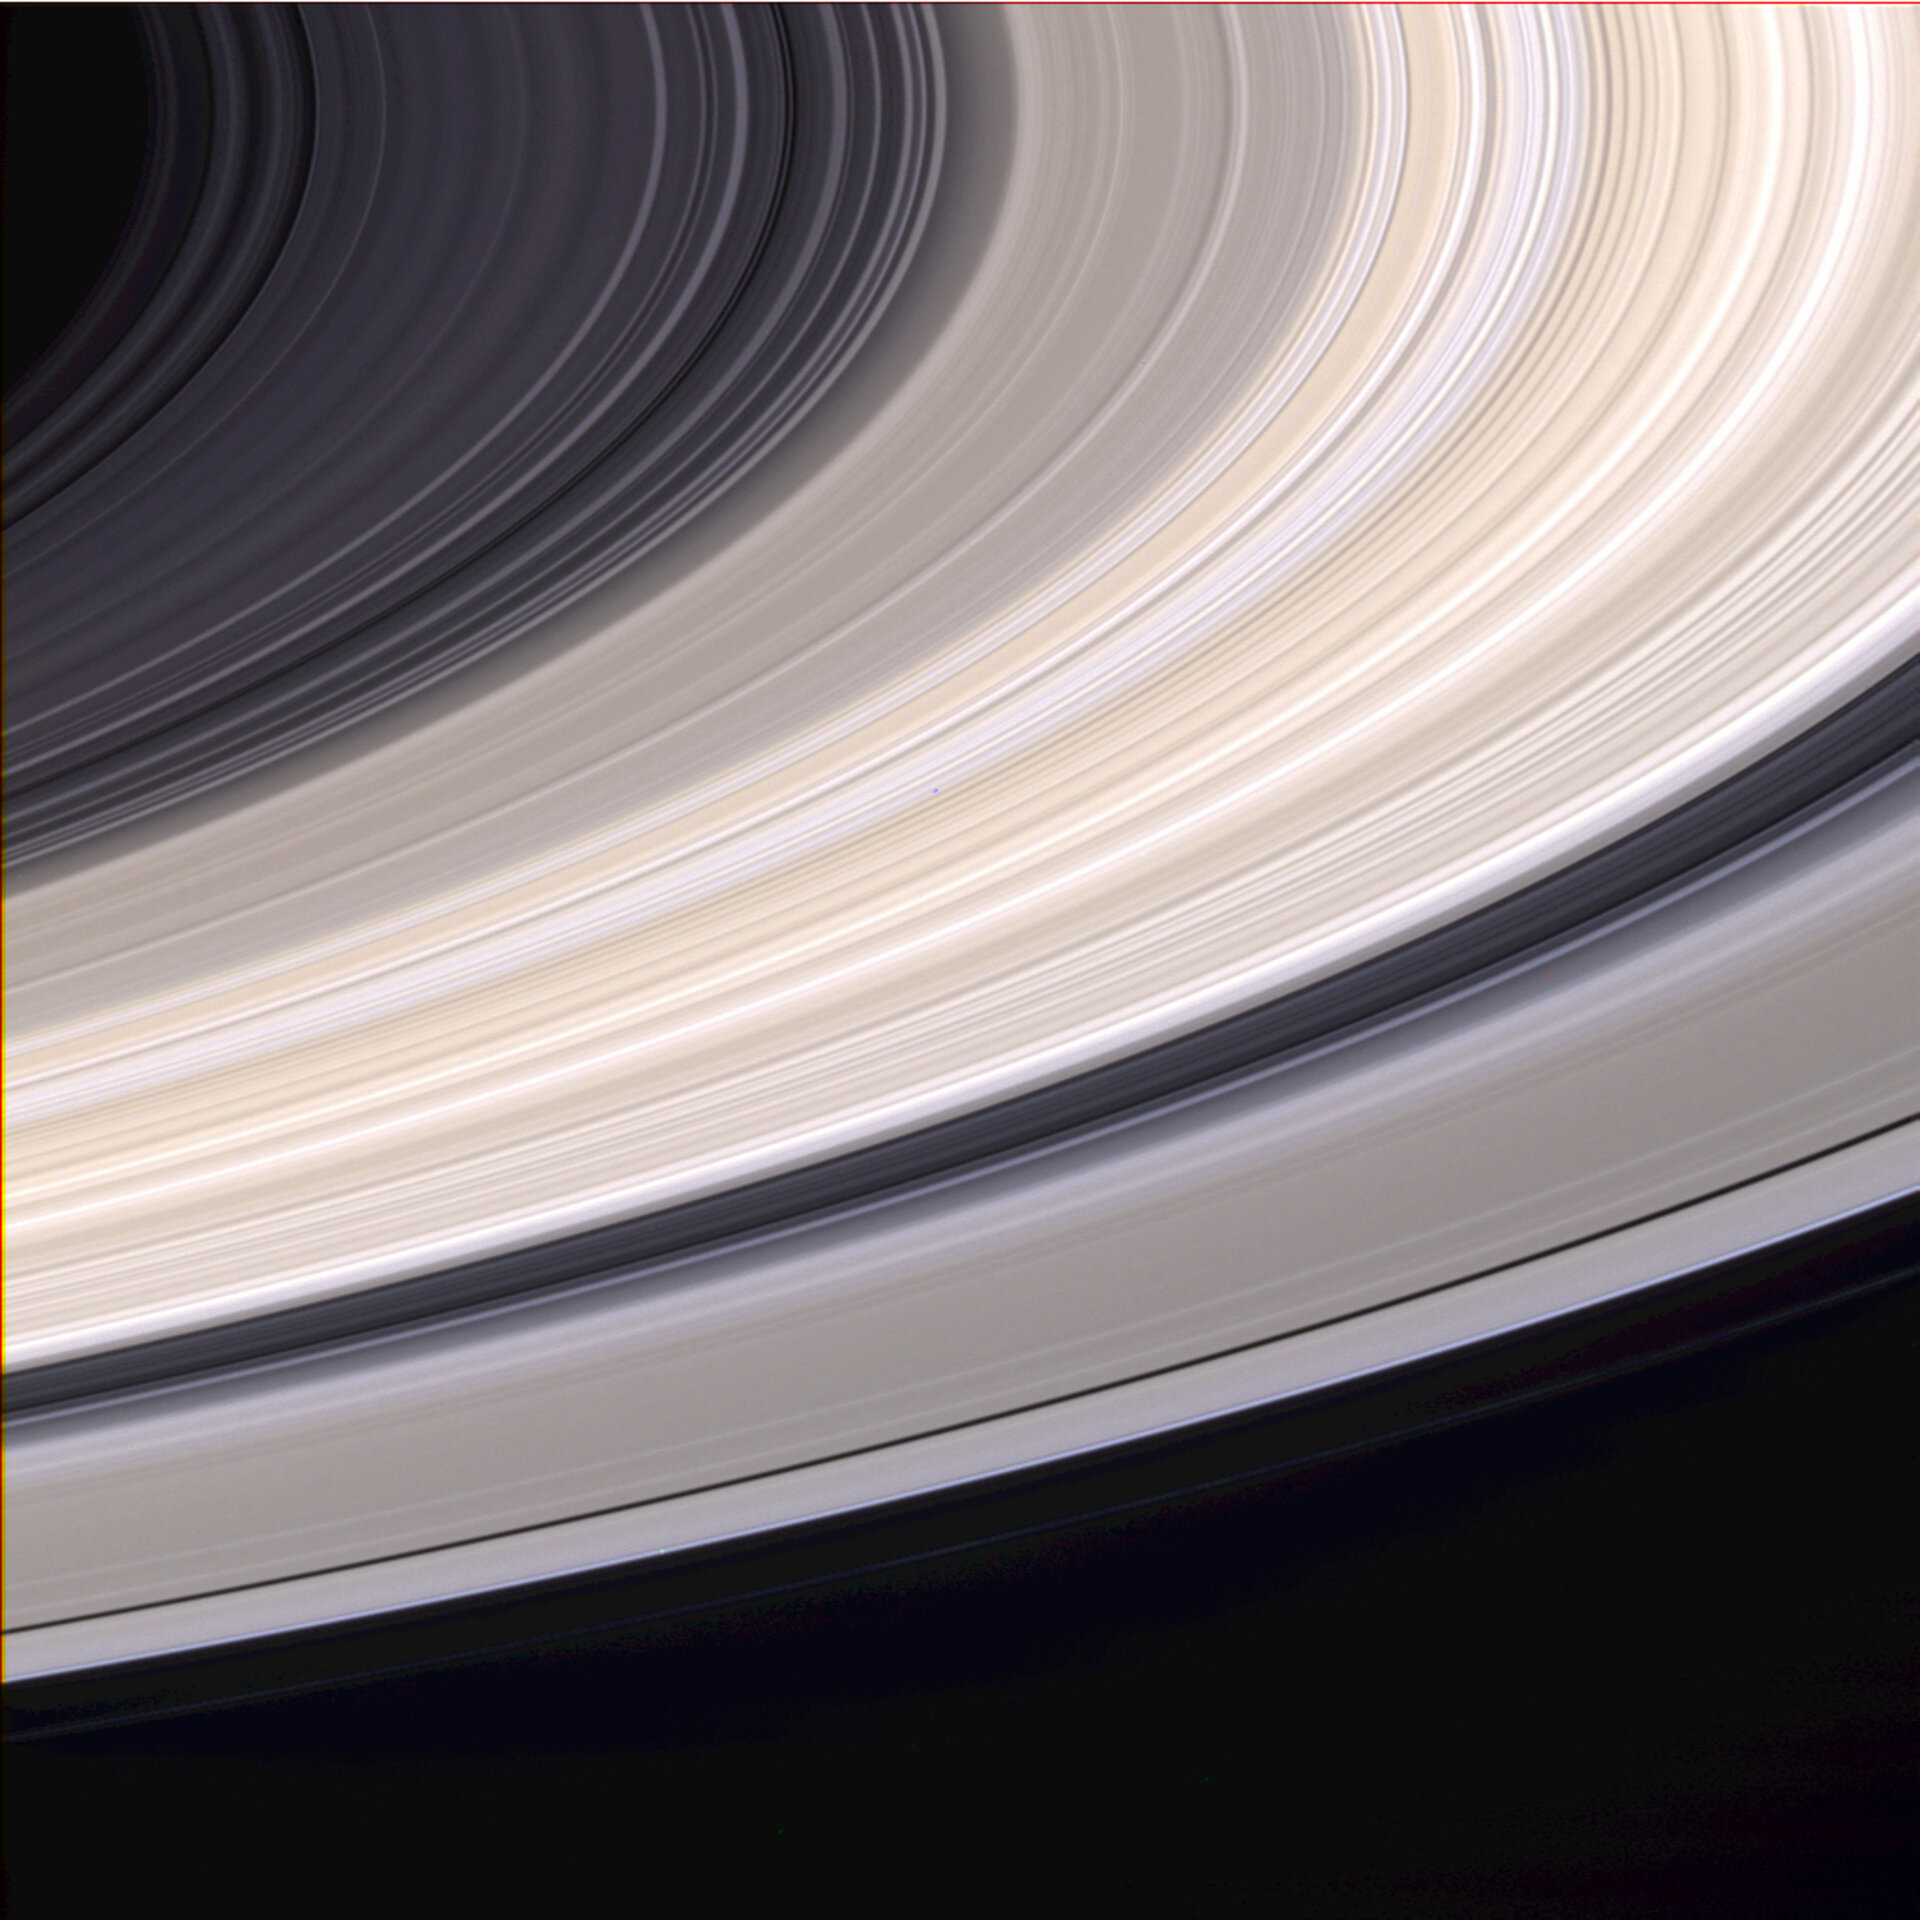 Какого цвета кольца сатурна. Кольца Сатурна Кассини. Планета Сатурн Кассини кольца. Кольца Сатурна вблизи Кассини. Кольца Сатурна фото Кассини.